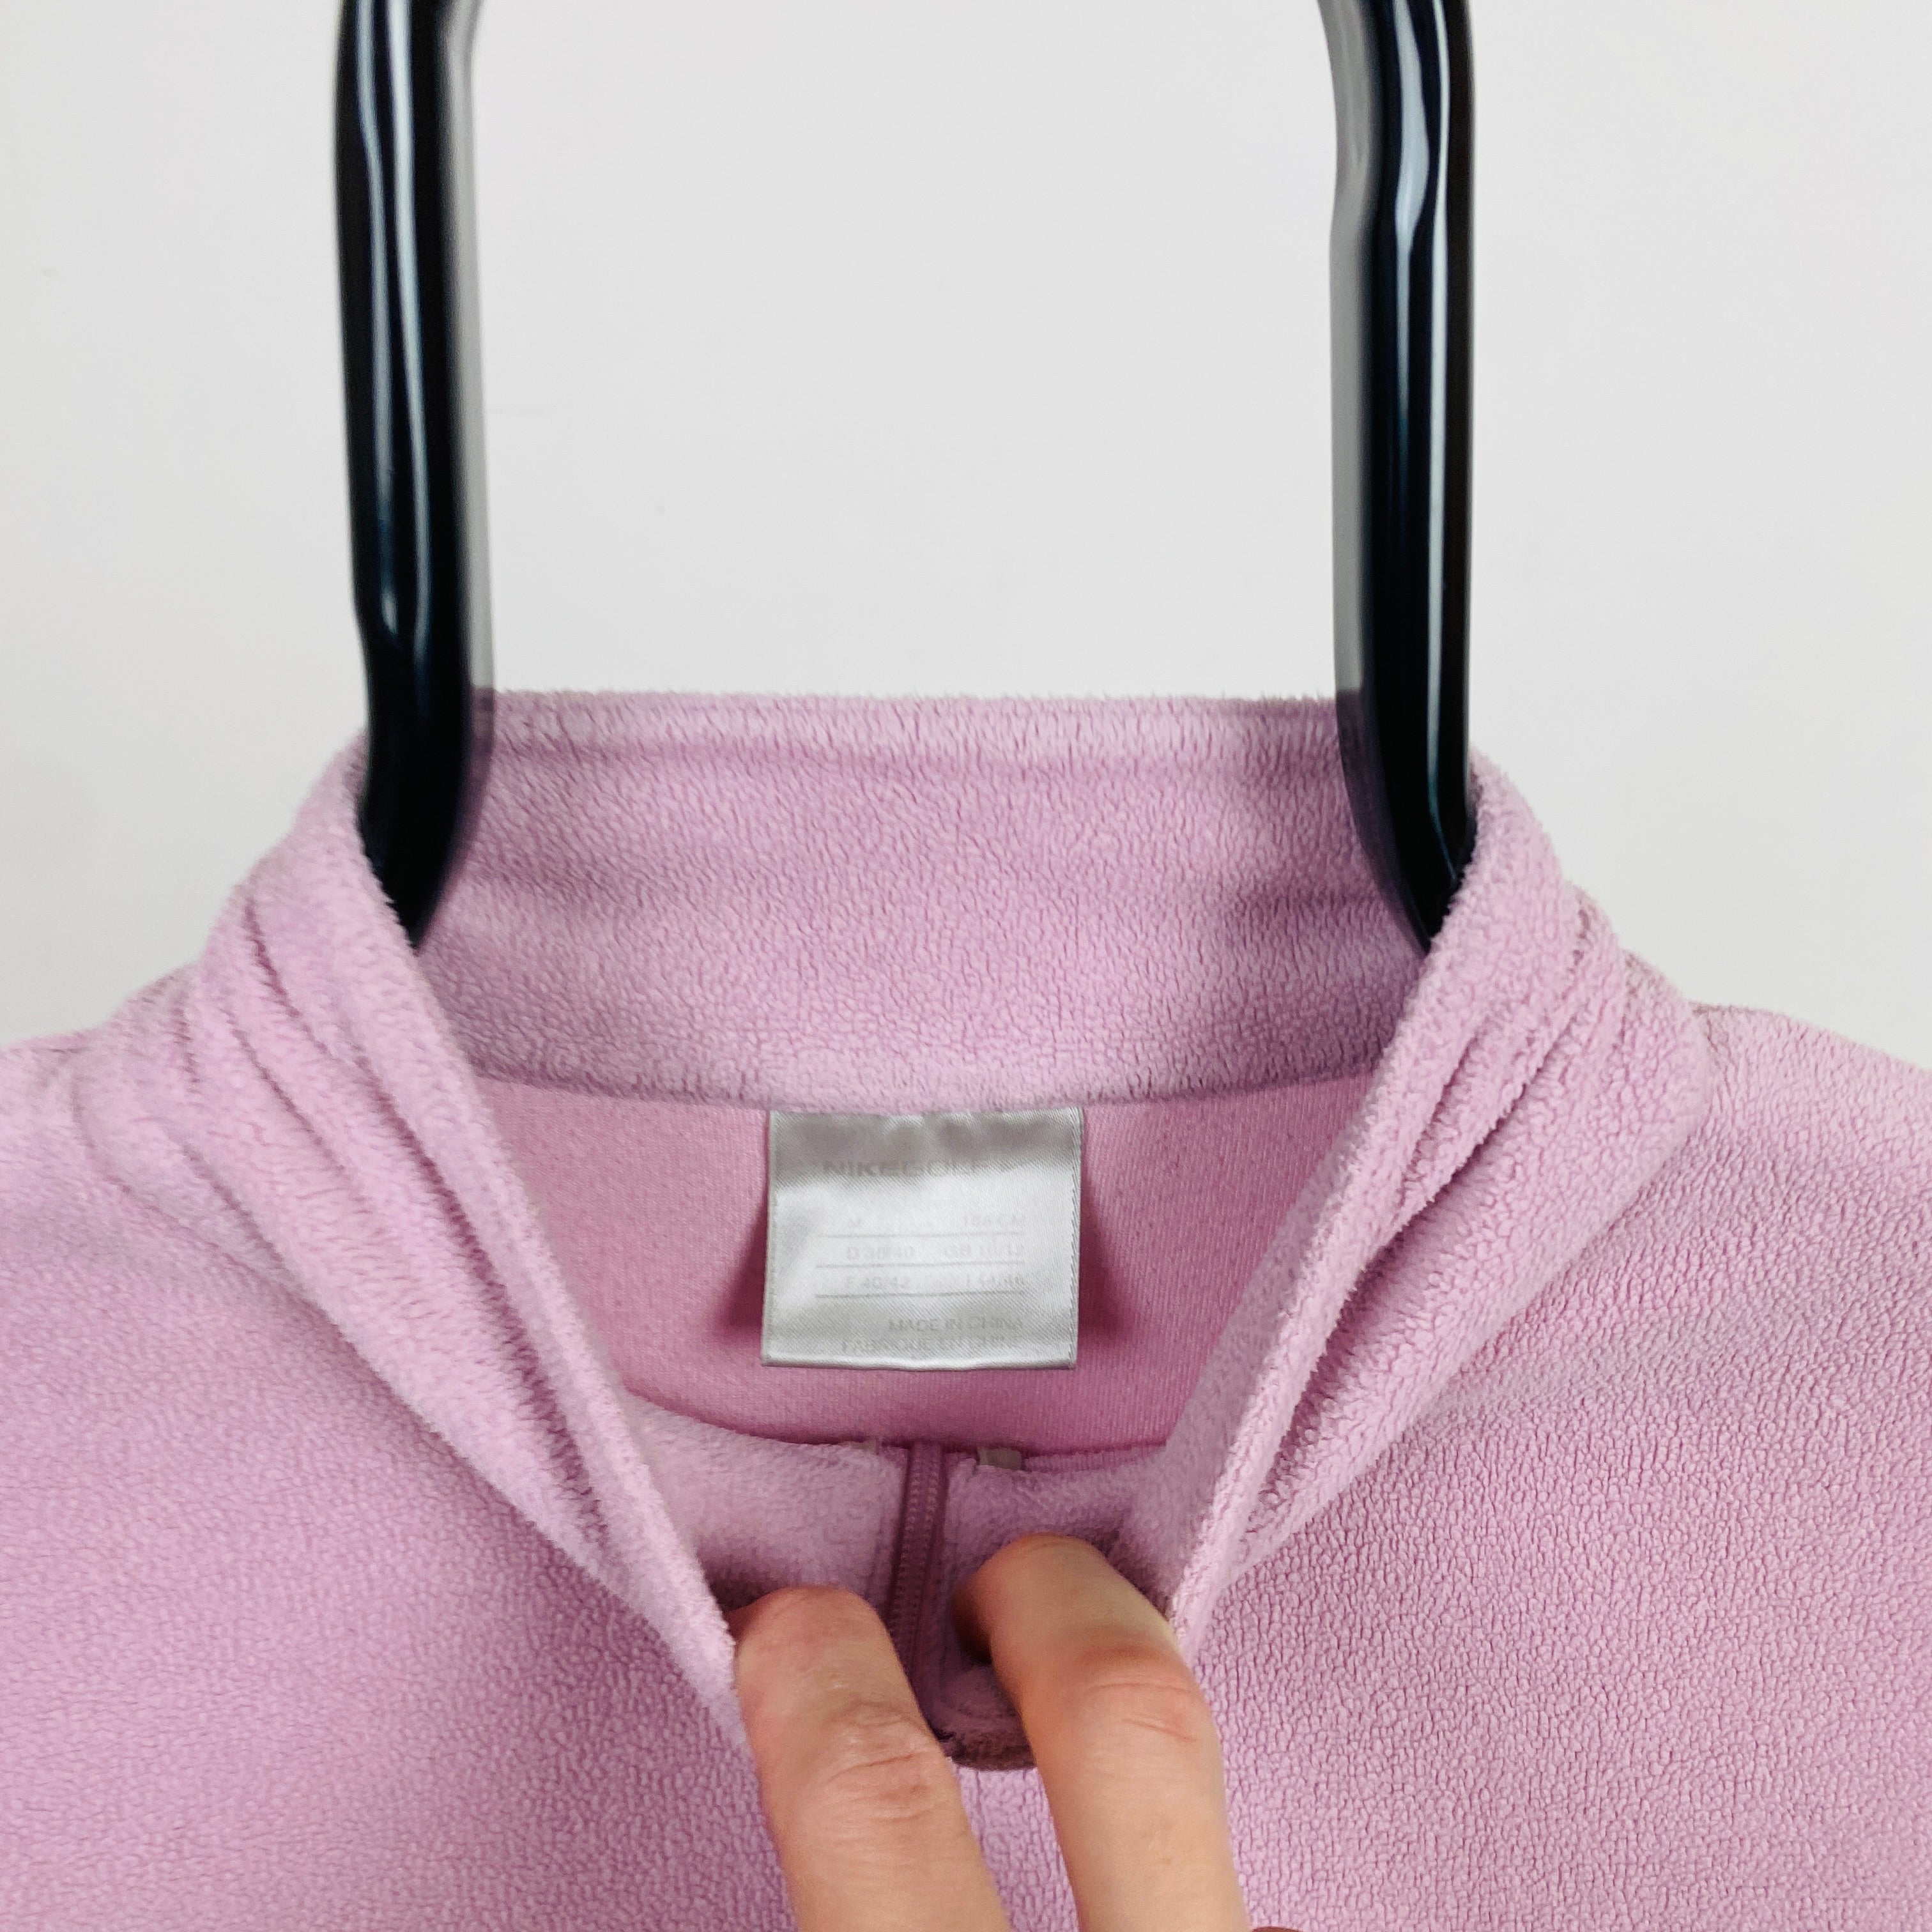 00s Nike 1/4 Zip Fleece Sweatshirt Pink Medium